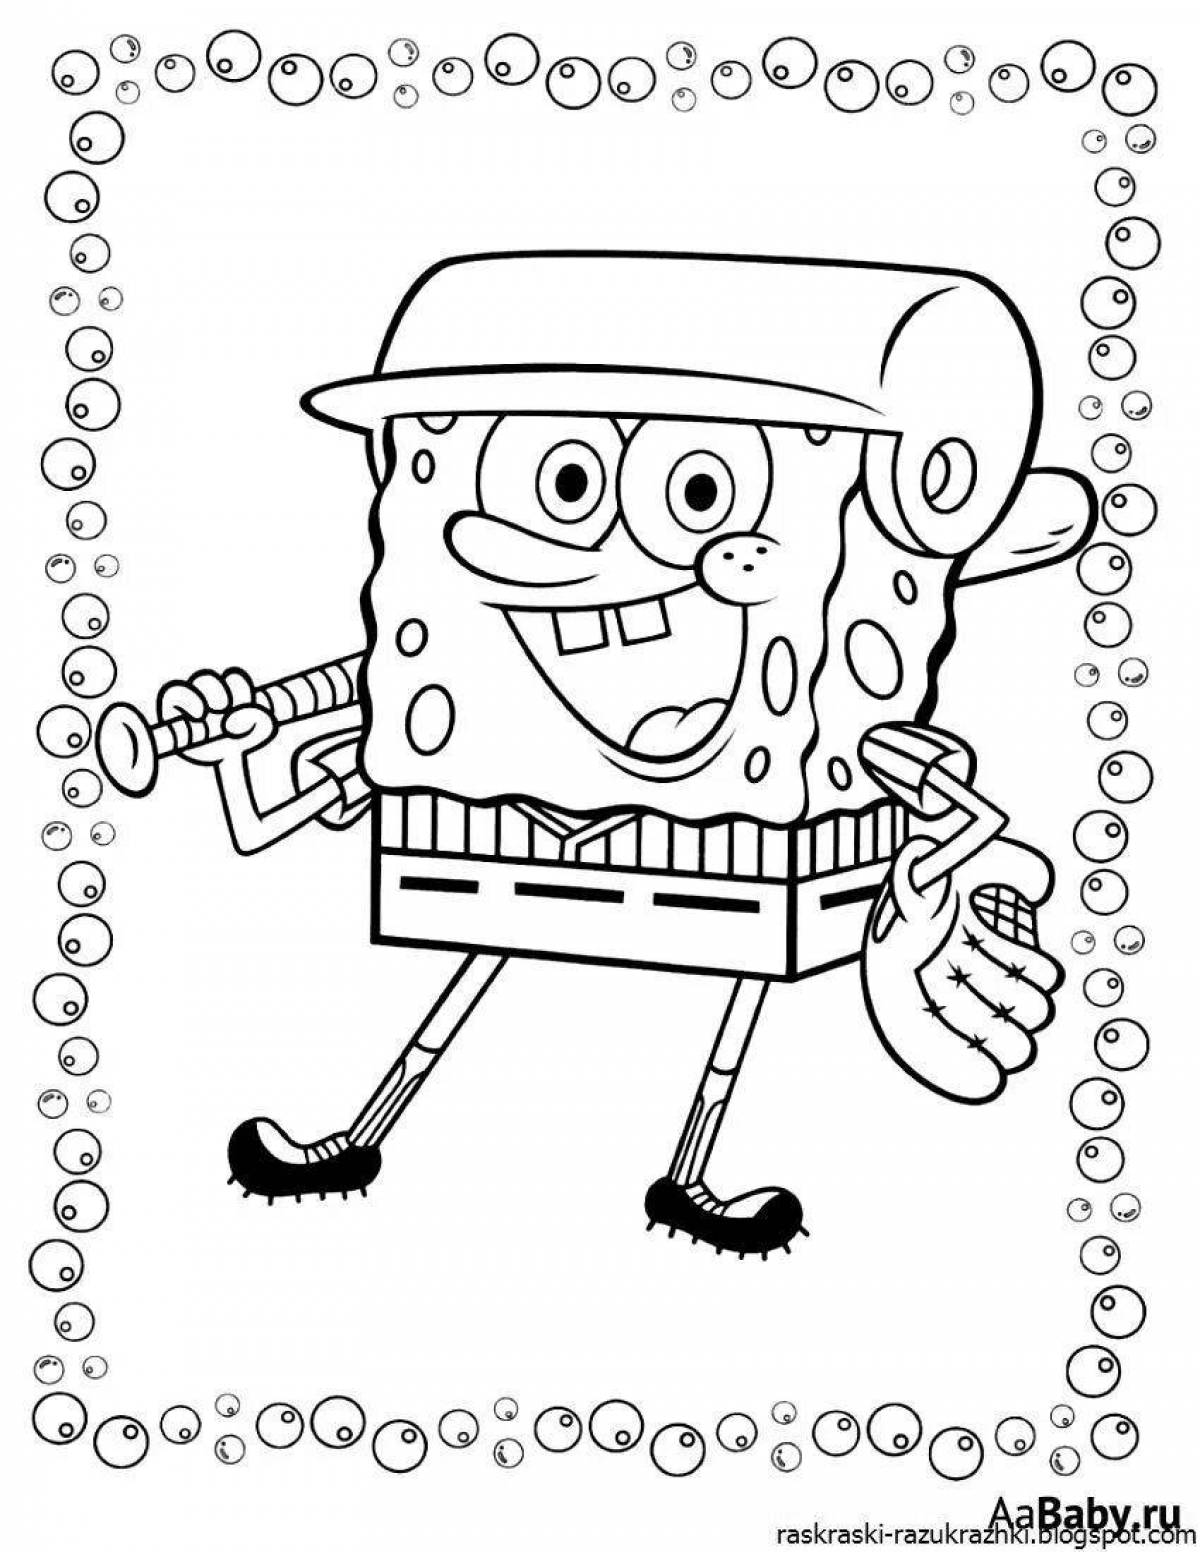 Bright spongebob coloring page